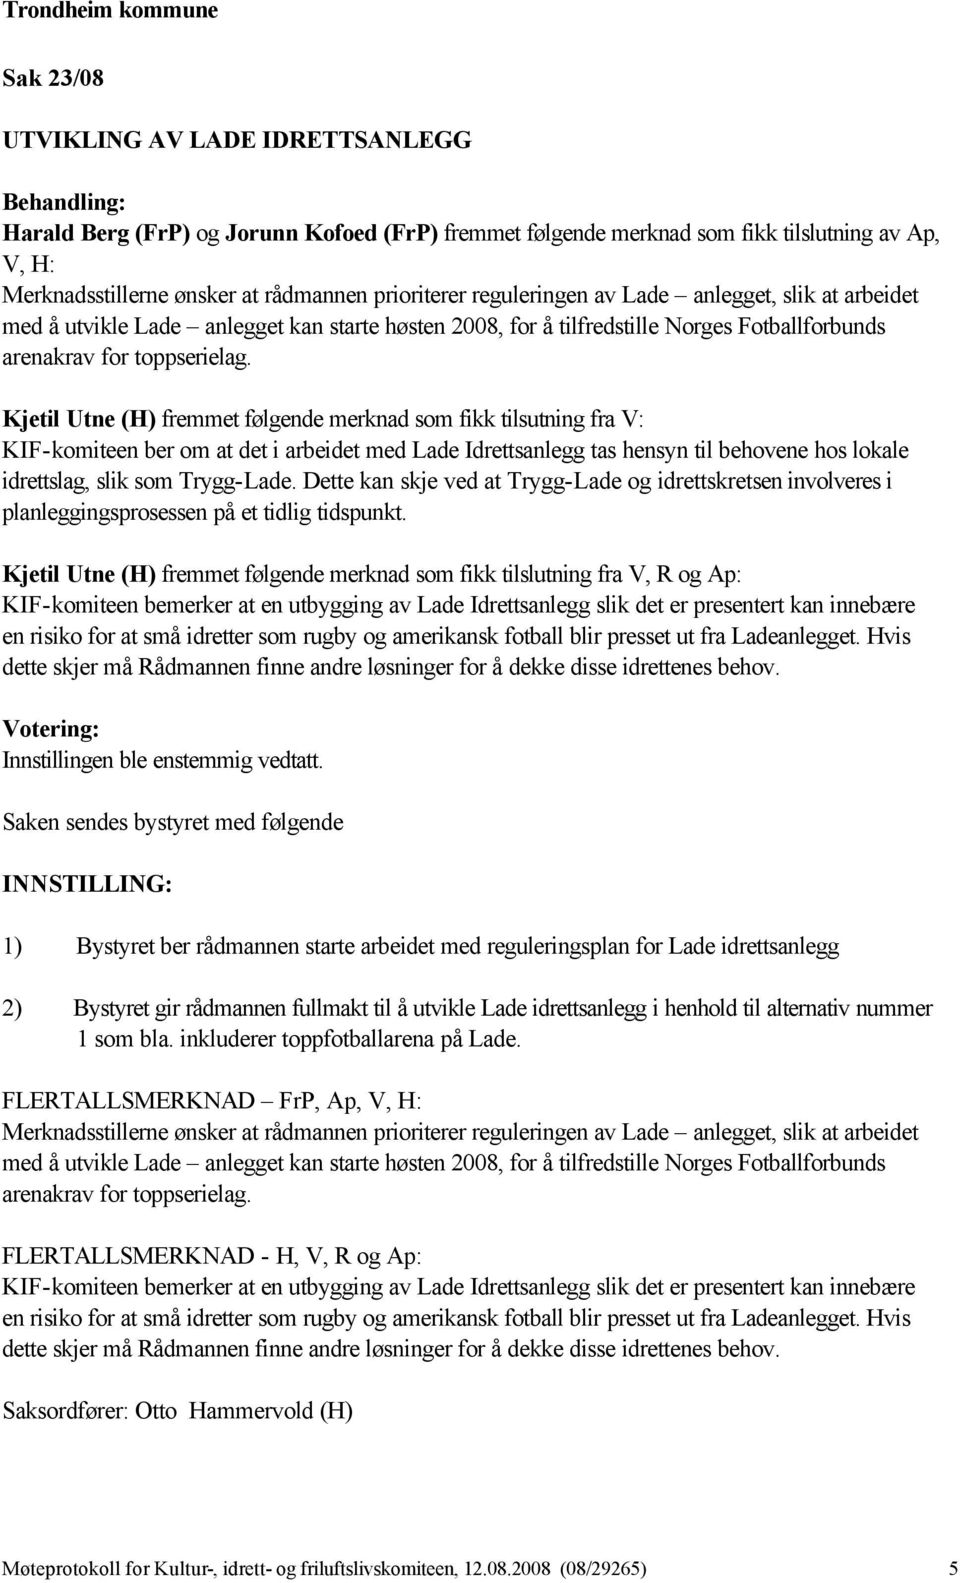 Kjetil Utne (H) fremmet følgende merknad som fikk tilsutning fra V: KIF-komiteen ber om at det i arbeidet med Lade Idrettsanlegg tas hensyn til behovene hos lokale idrettslag, slik som Trygg-Lade.